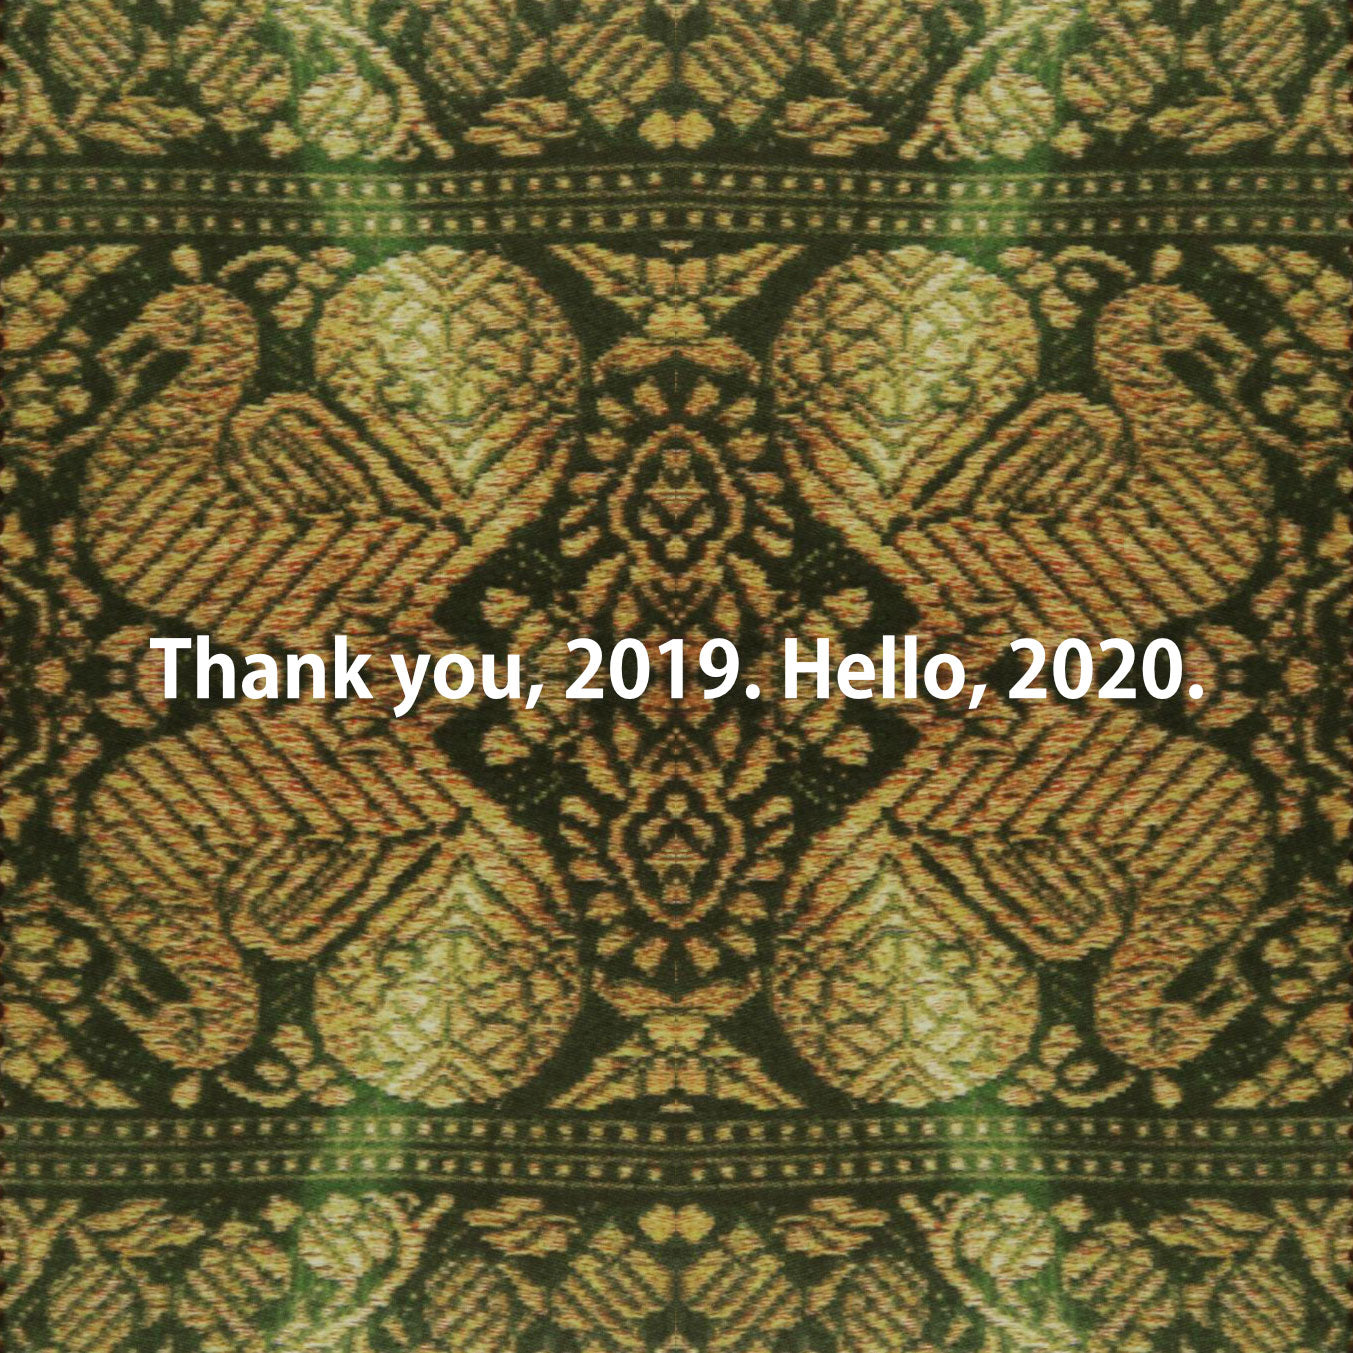 Thank you, 2019. Hello, 2020.